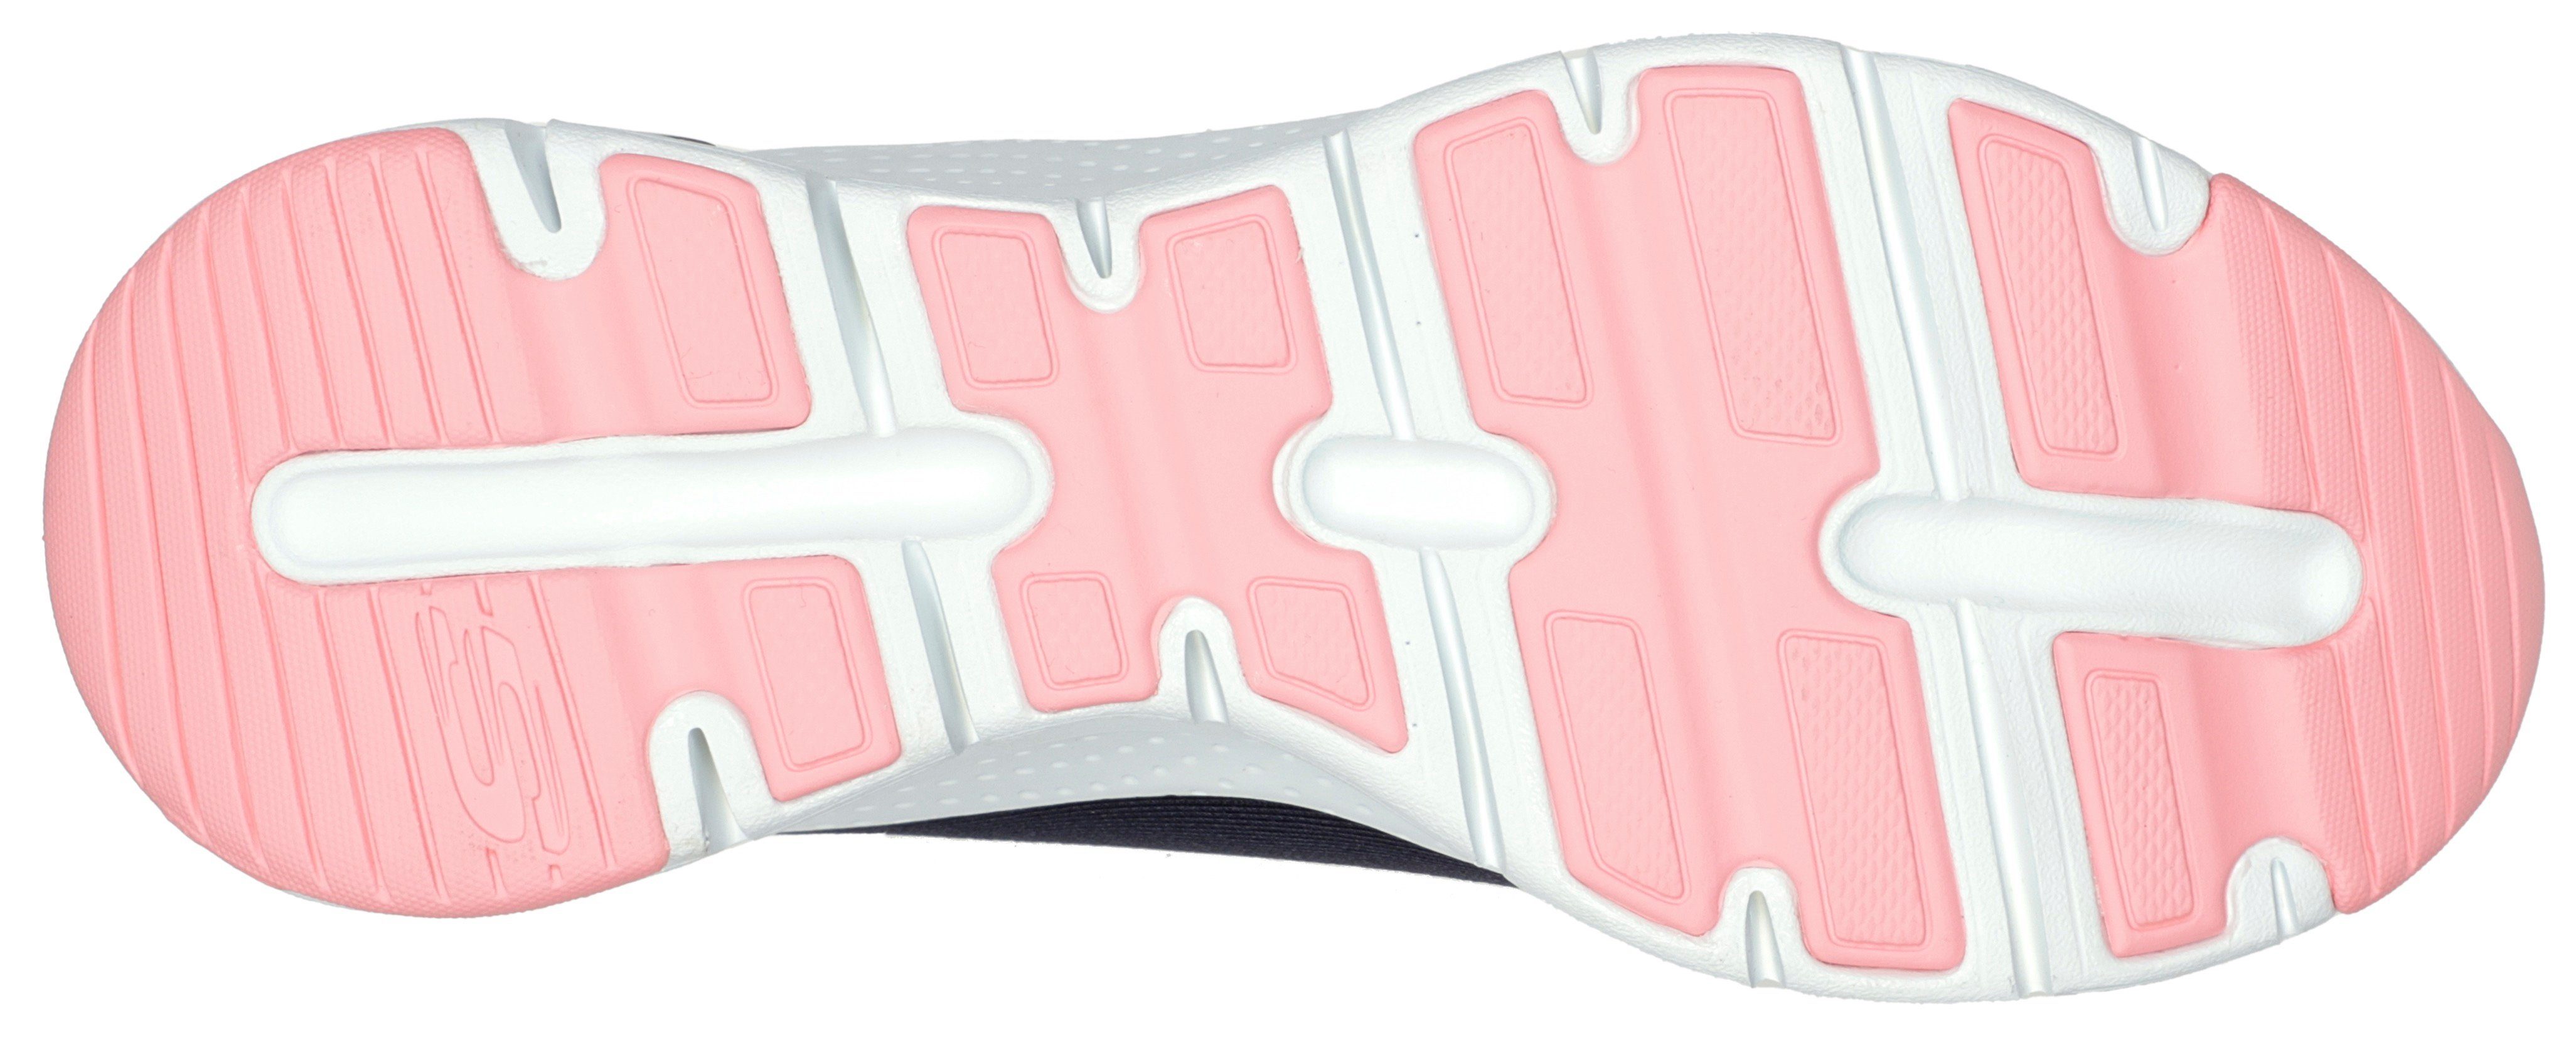 Skechers FIT navy-koralle Sneaker Logo-Emblem seitlichem mit ARCH